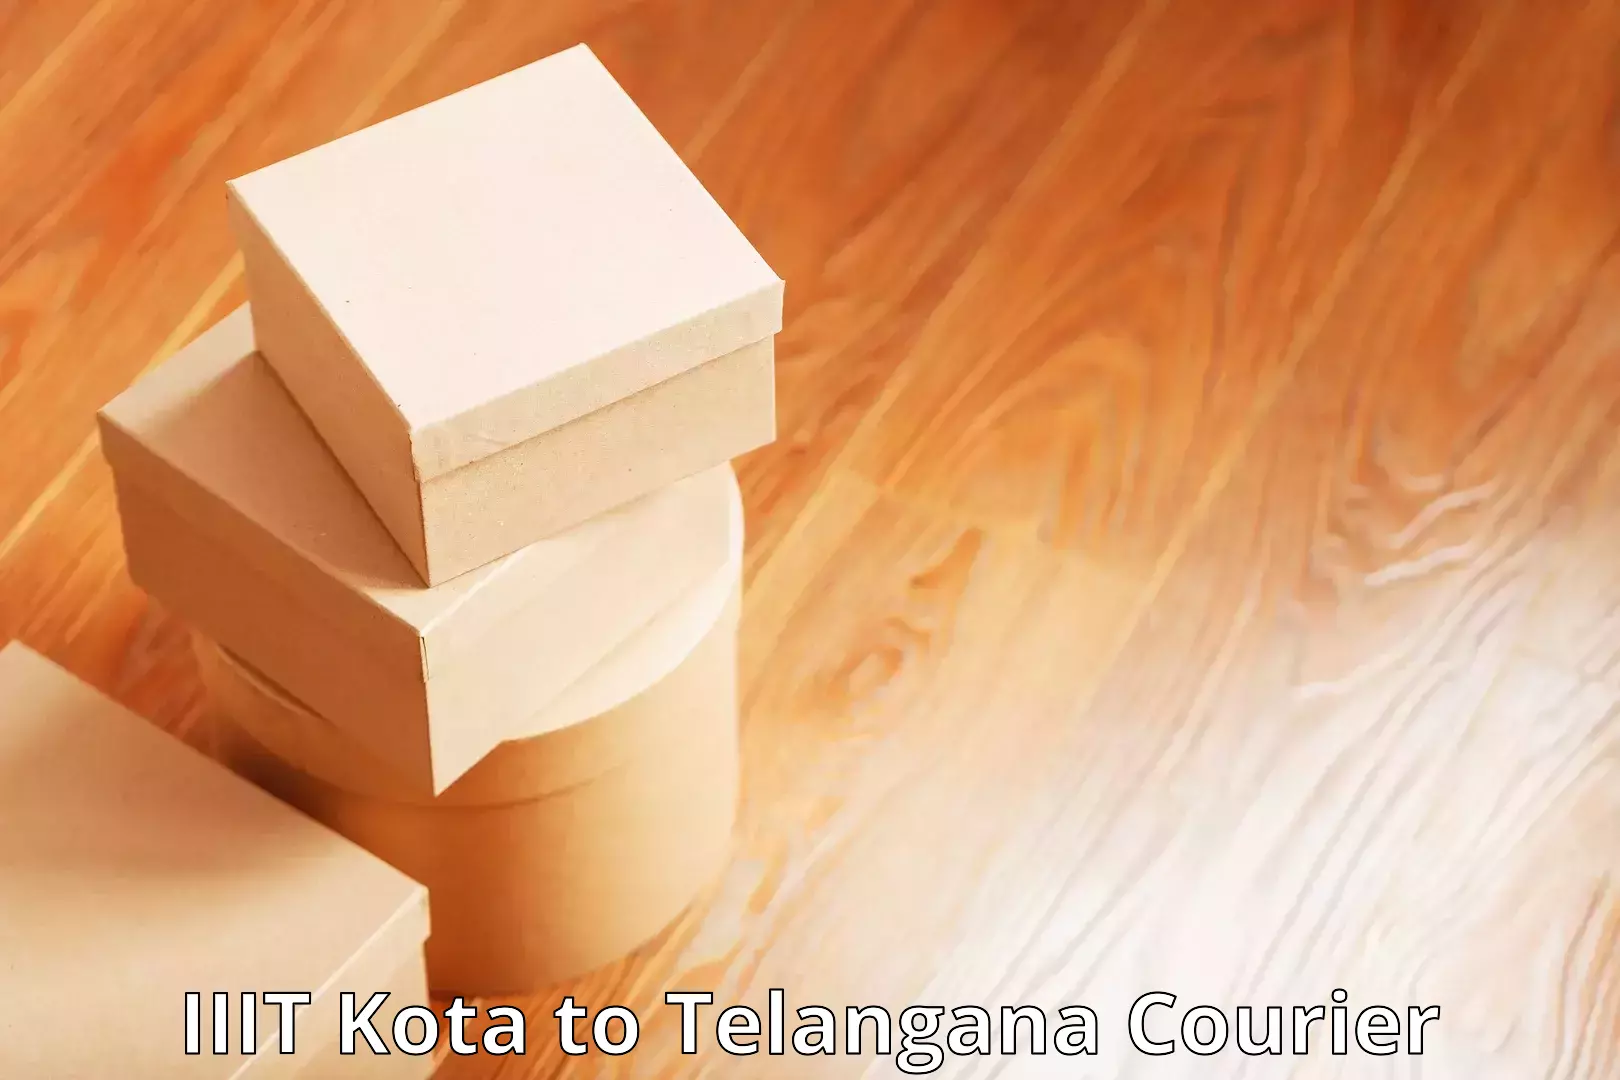 Efficient courier operations IIIT Kota to Devarakonda